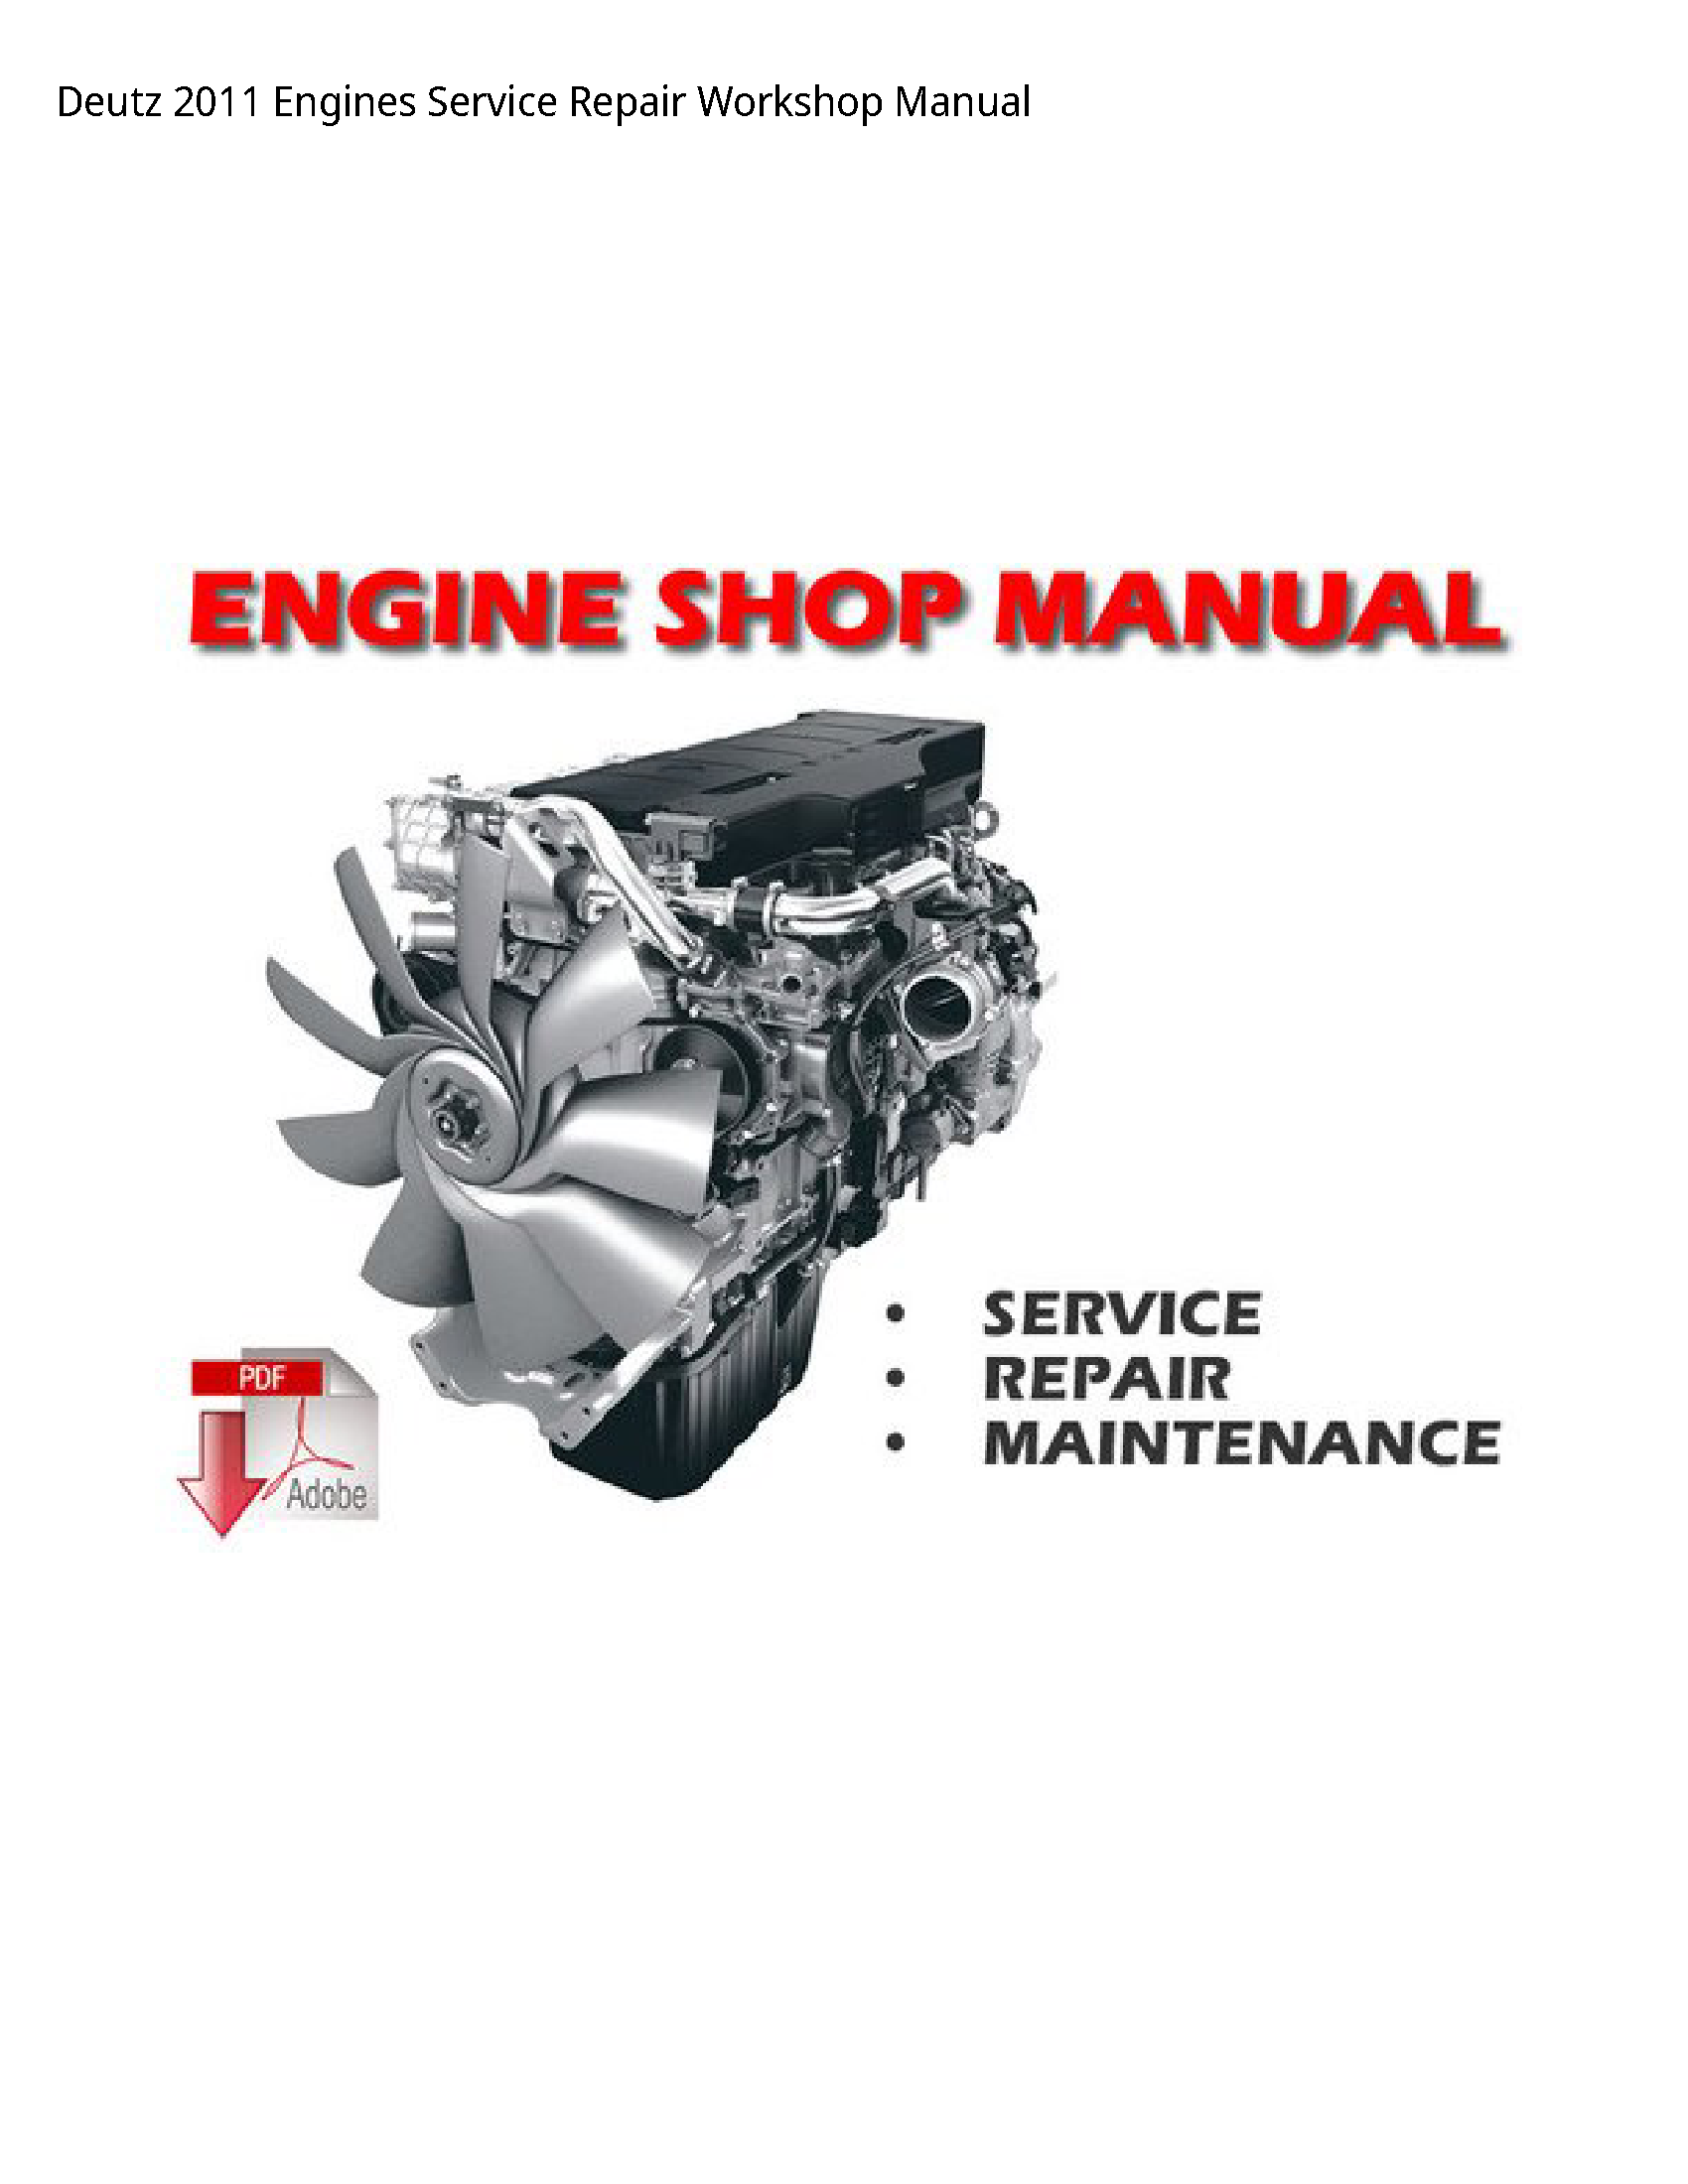 Deutz 2011 Engines manual